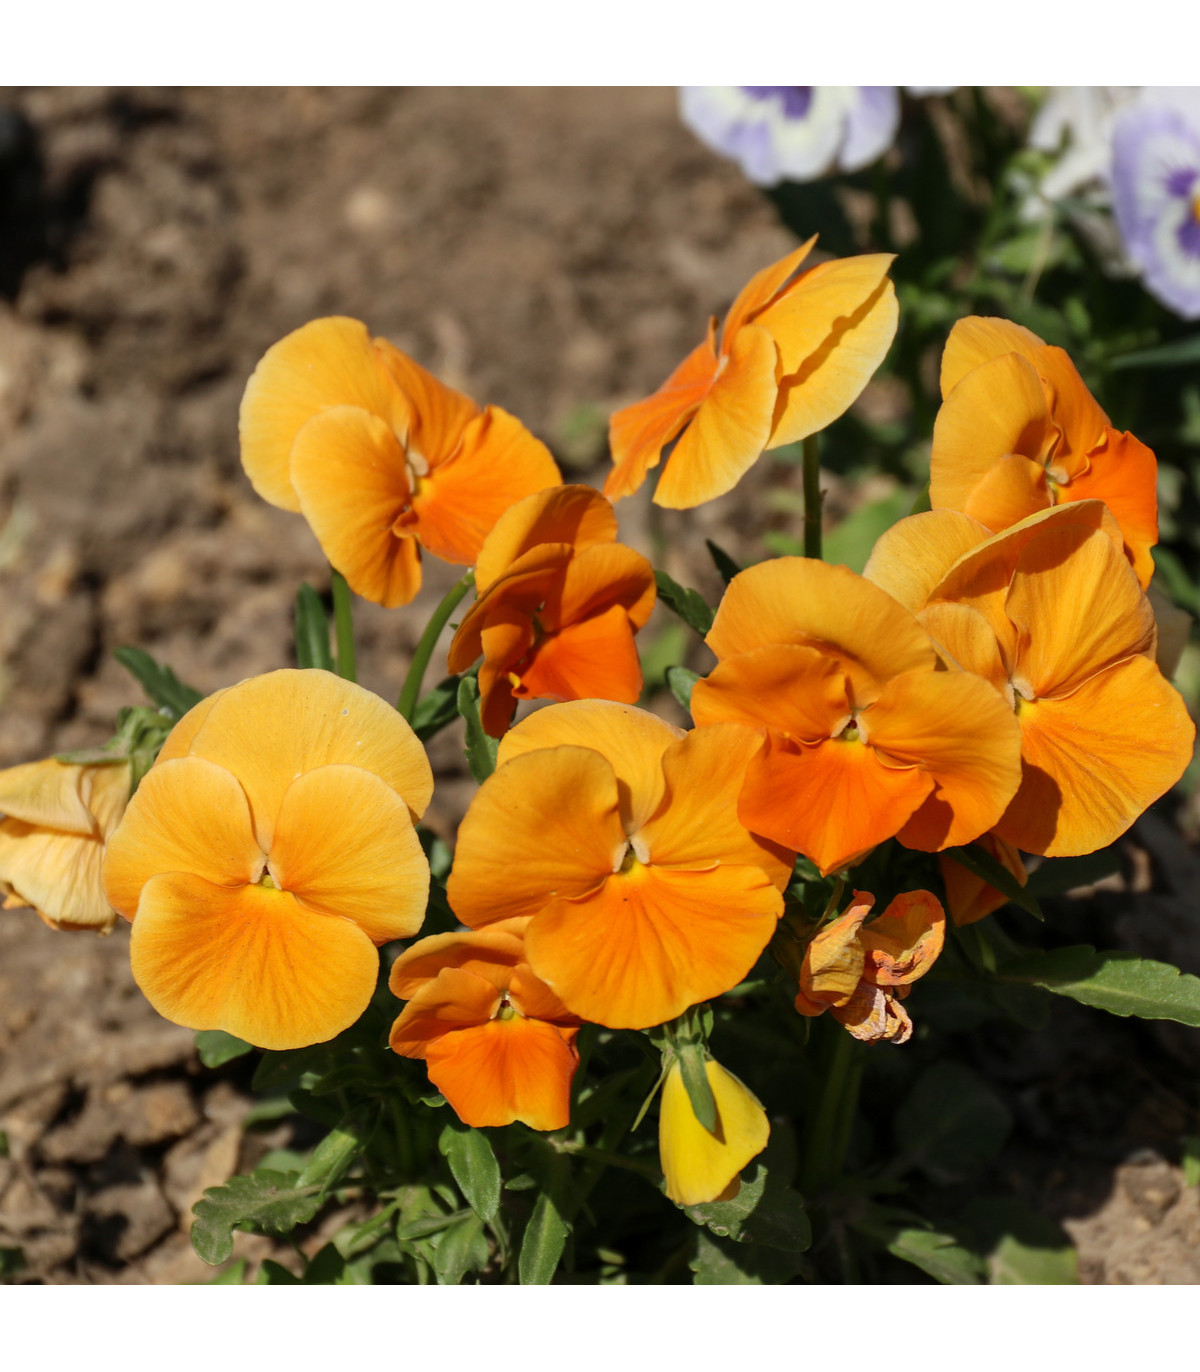 Maceška oranžová švýcarská Schweiter Riesen - Viola wittrockiana - prodej semen macešek - 0,3 gr